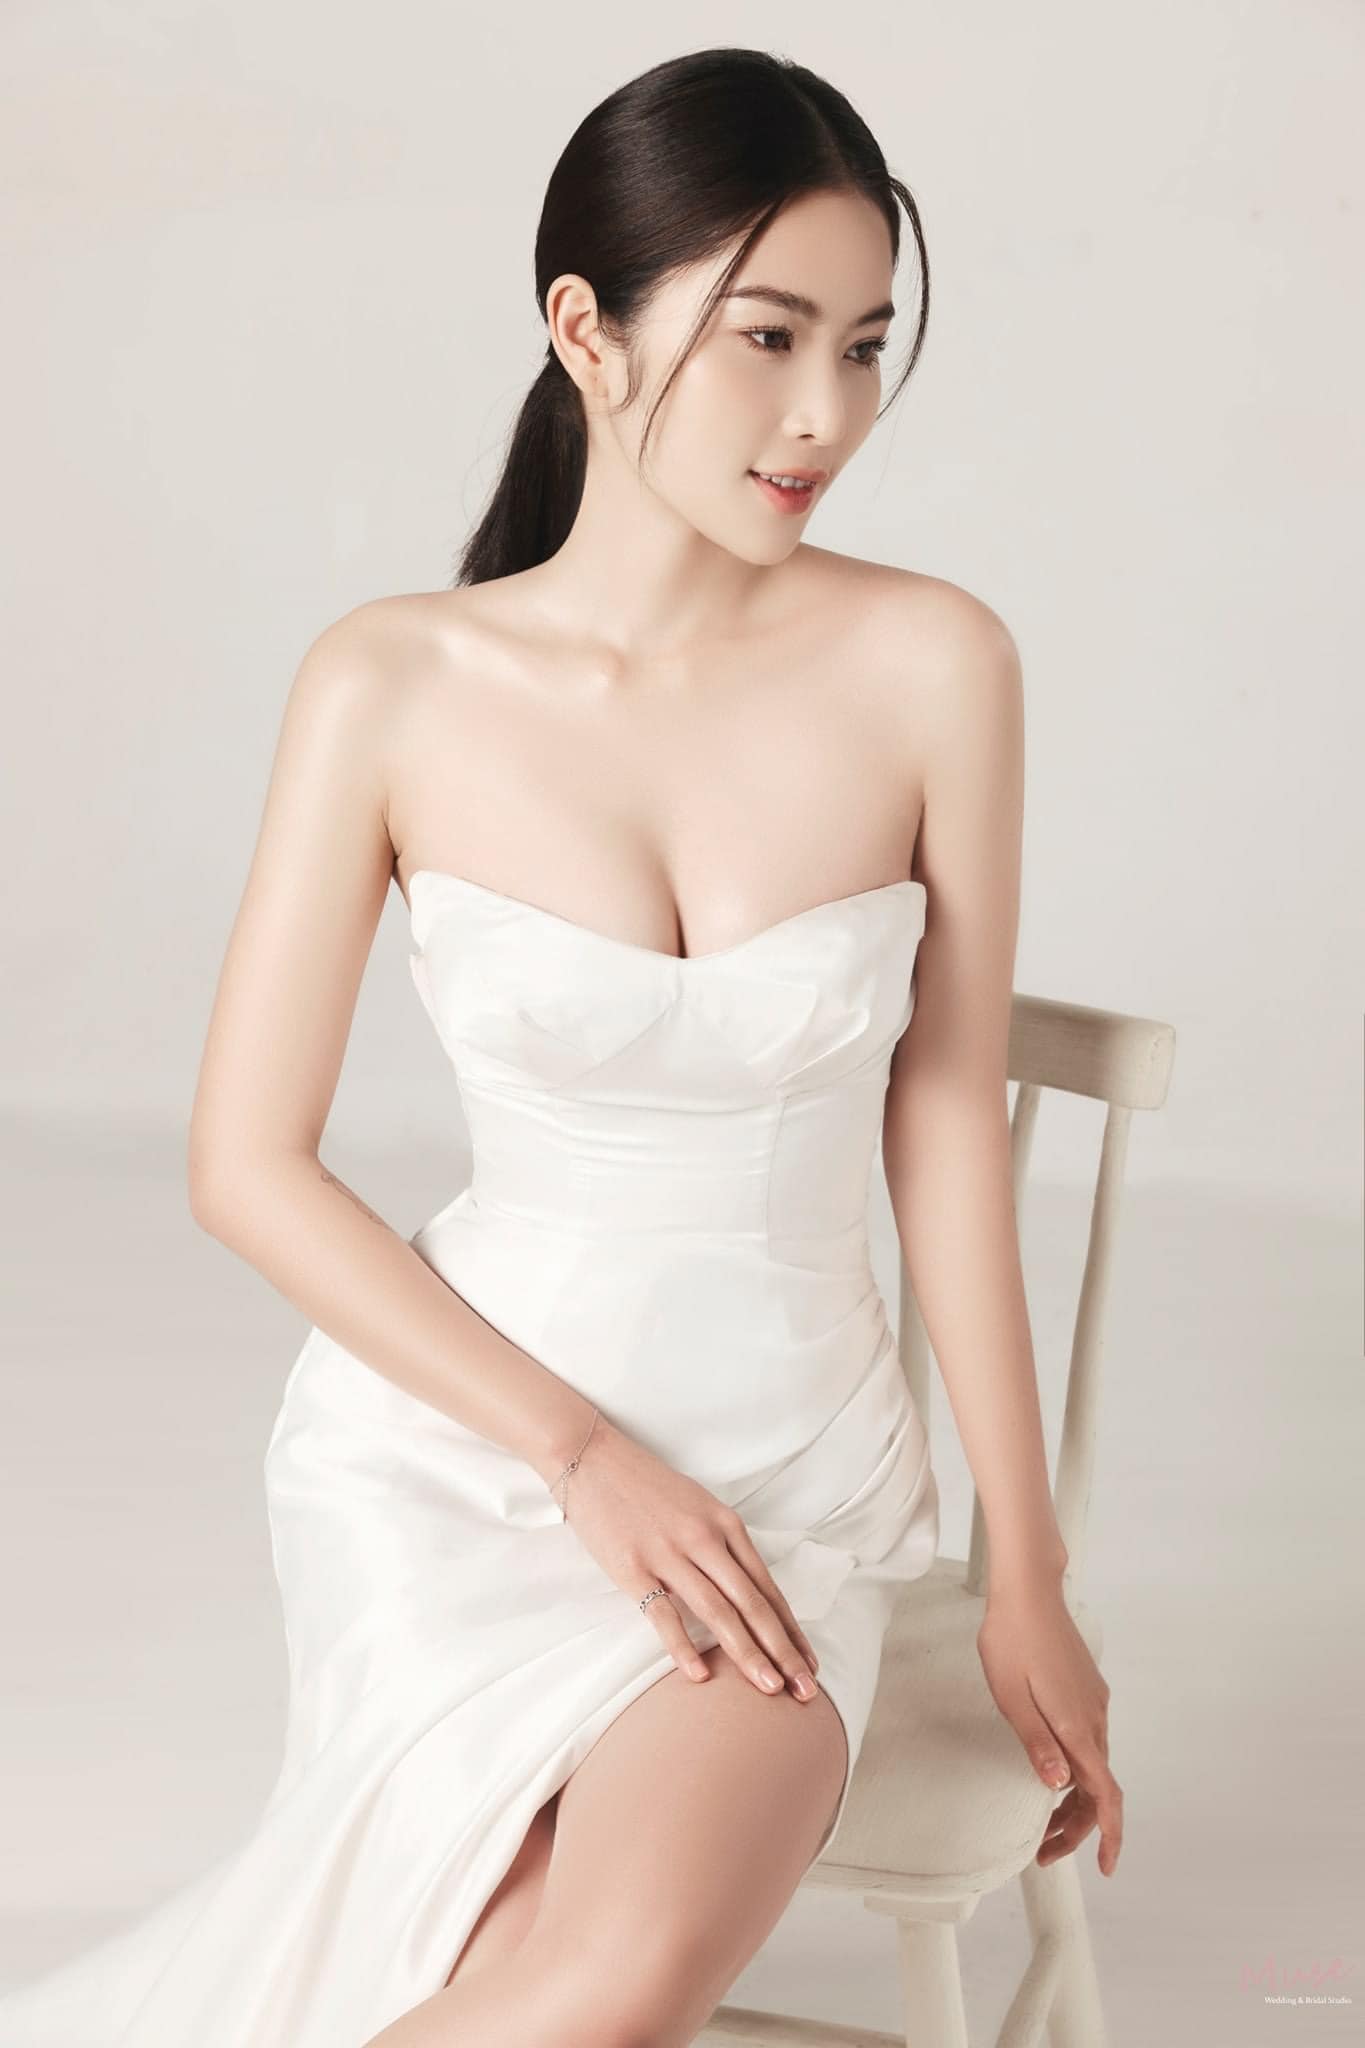 Người đẹp nức tiếng Tiền Giang dự thi Hoa hậu Hoàn vũ thừa nhận song tính là ai?